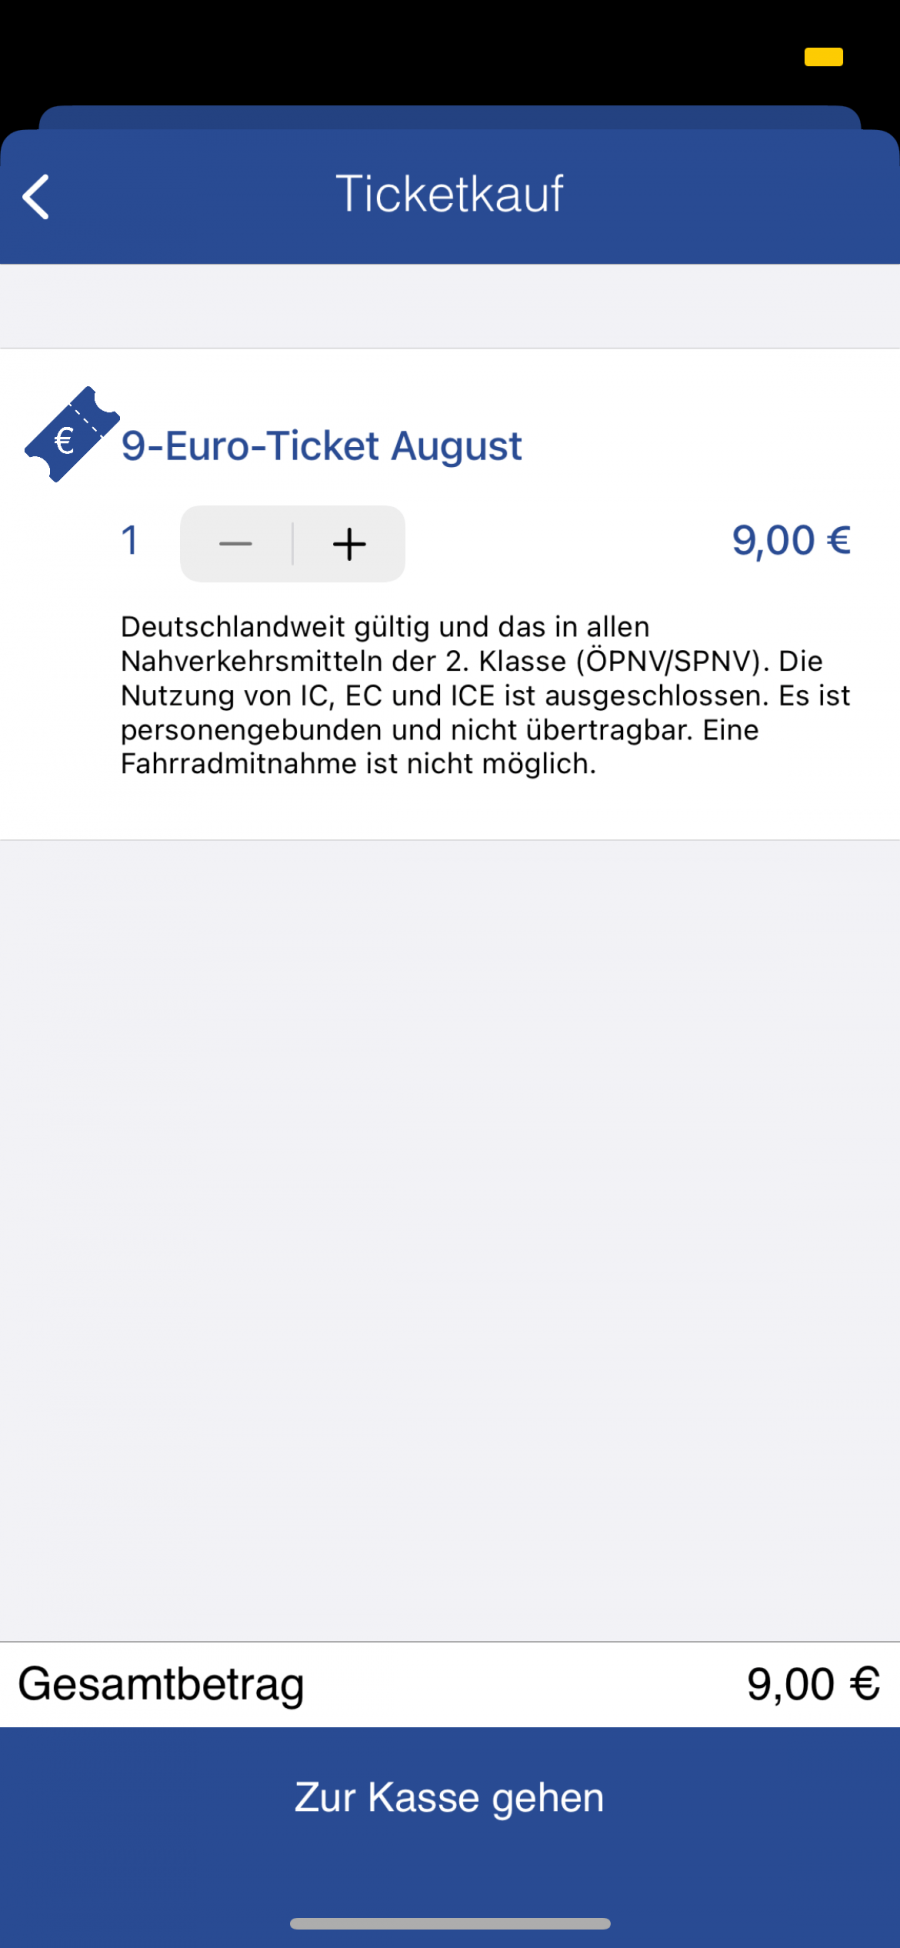 9-Euro-Ticket für den August in der Mutti-App der Bogestra